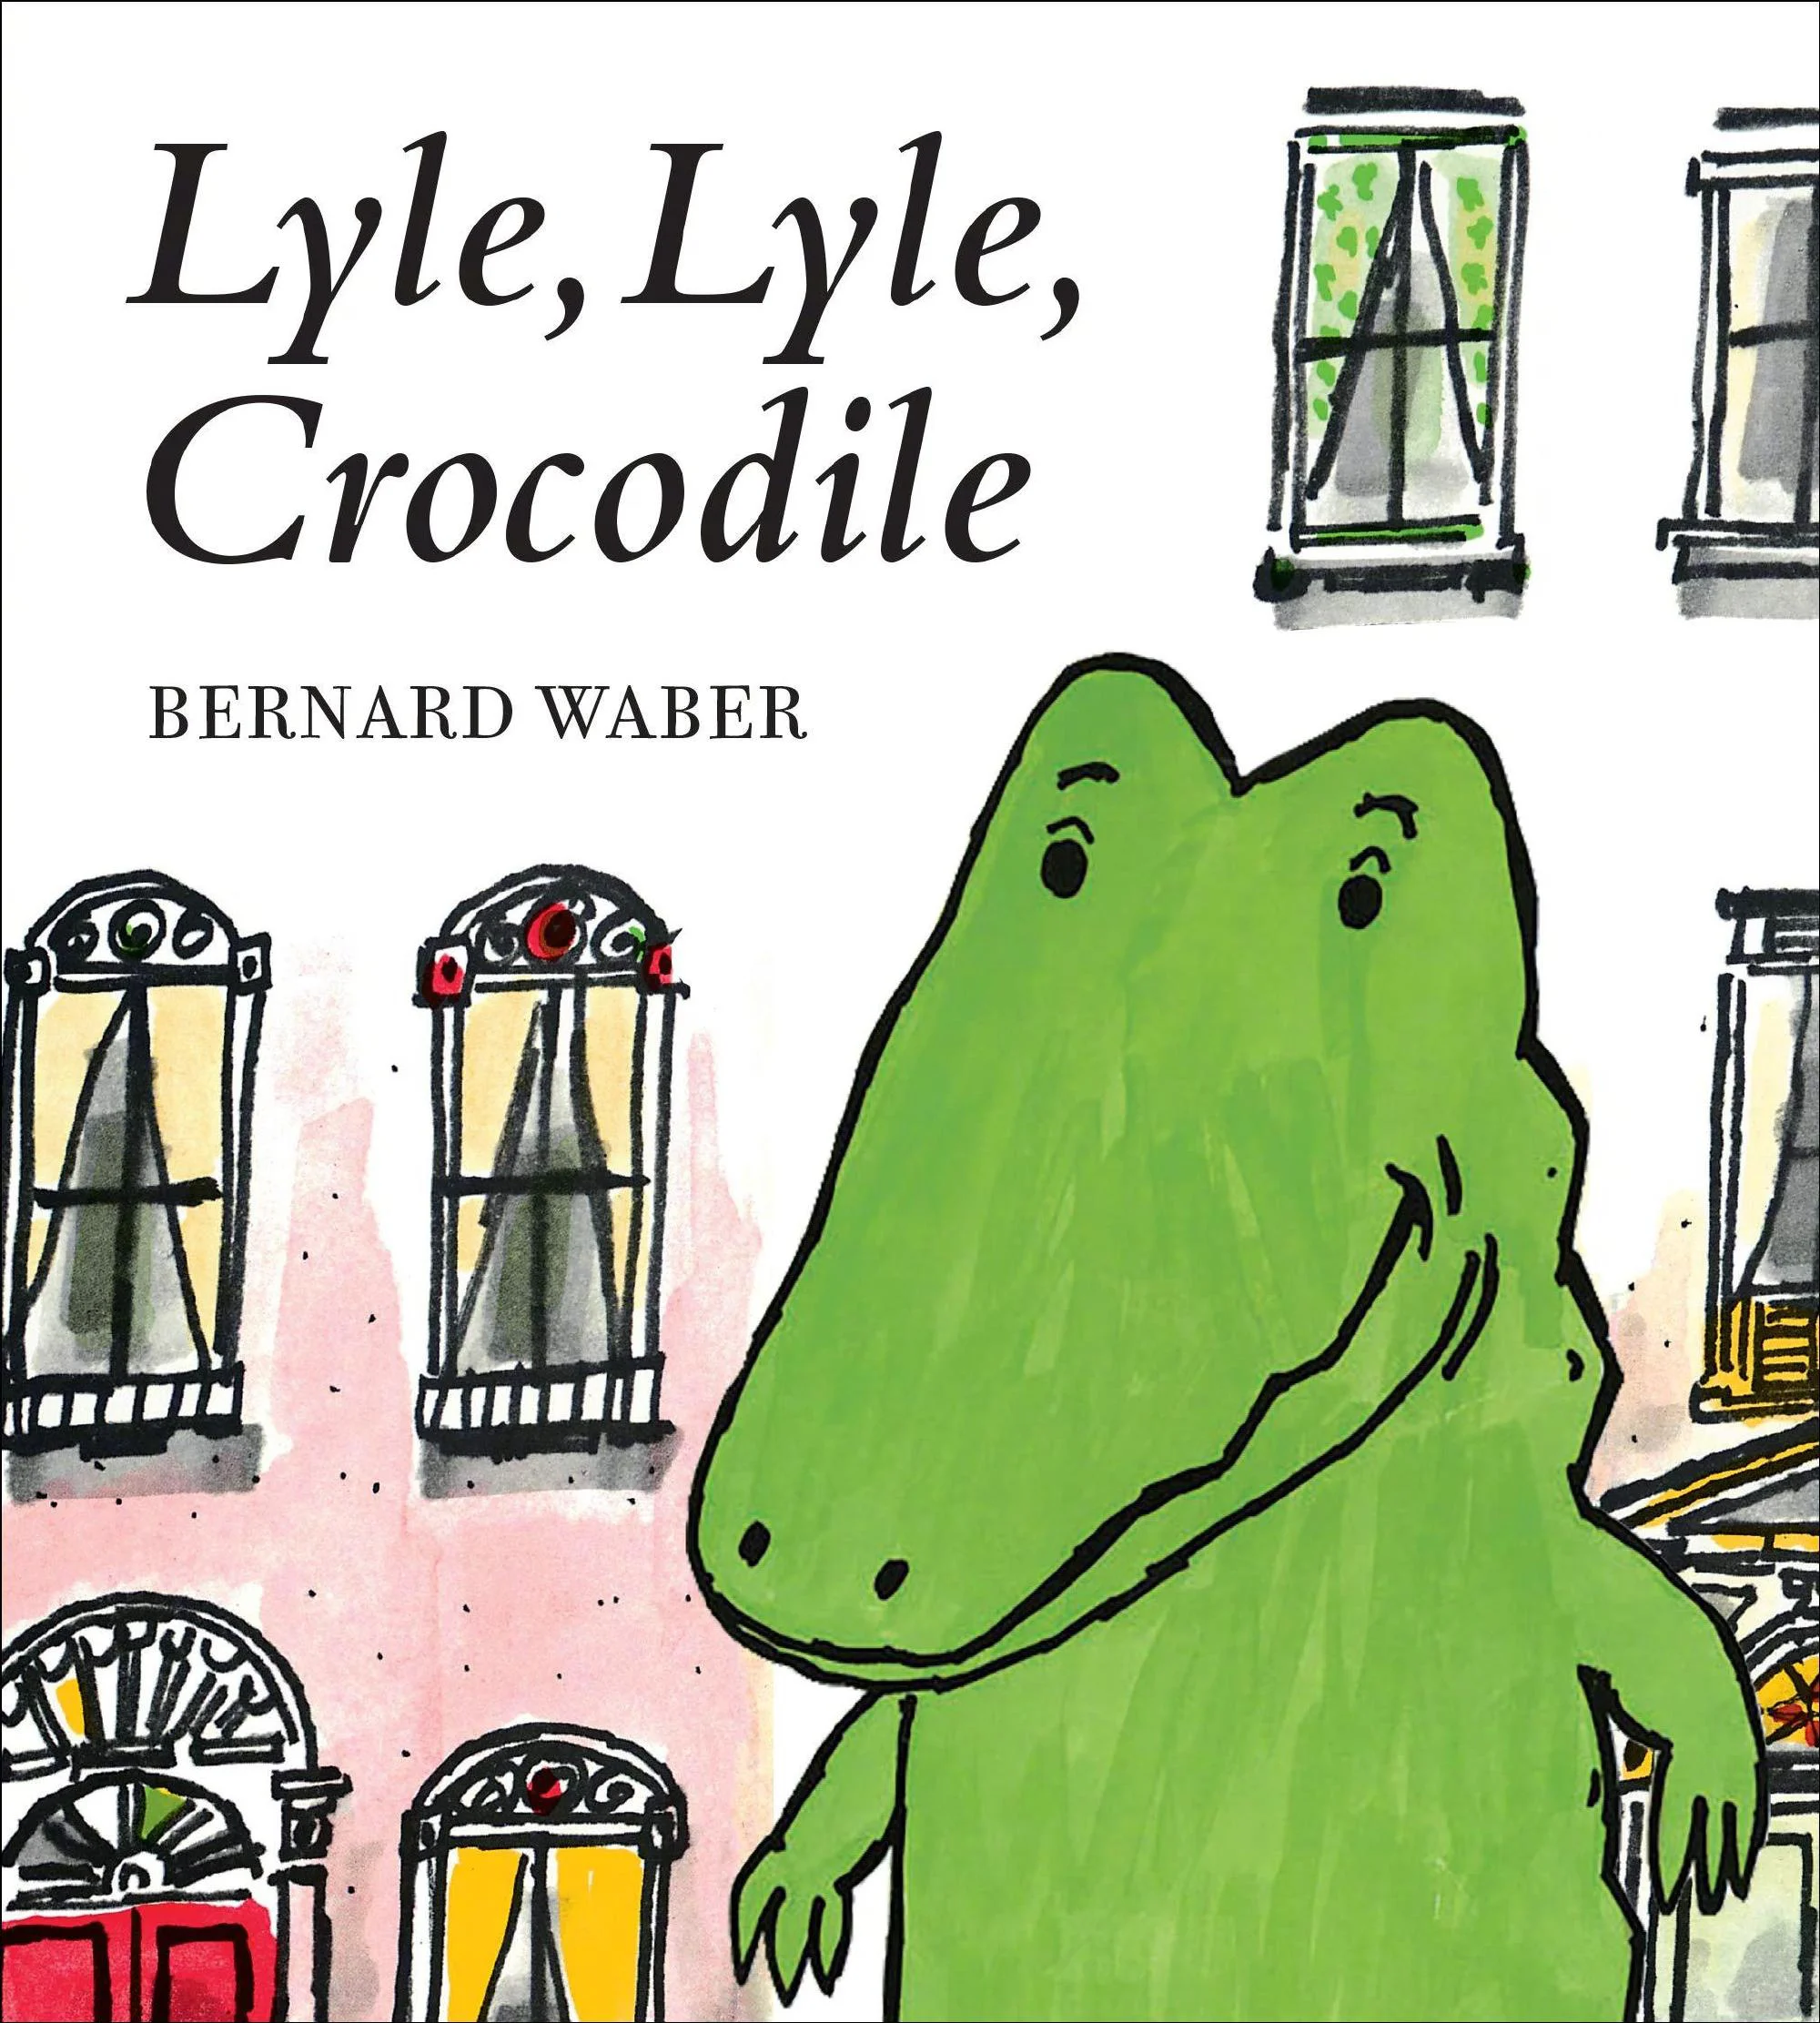 "Lyle, Lyle, Crocodile": Shawn Mendes joins film to voice Crocodile Lyle